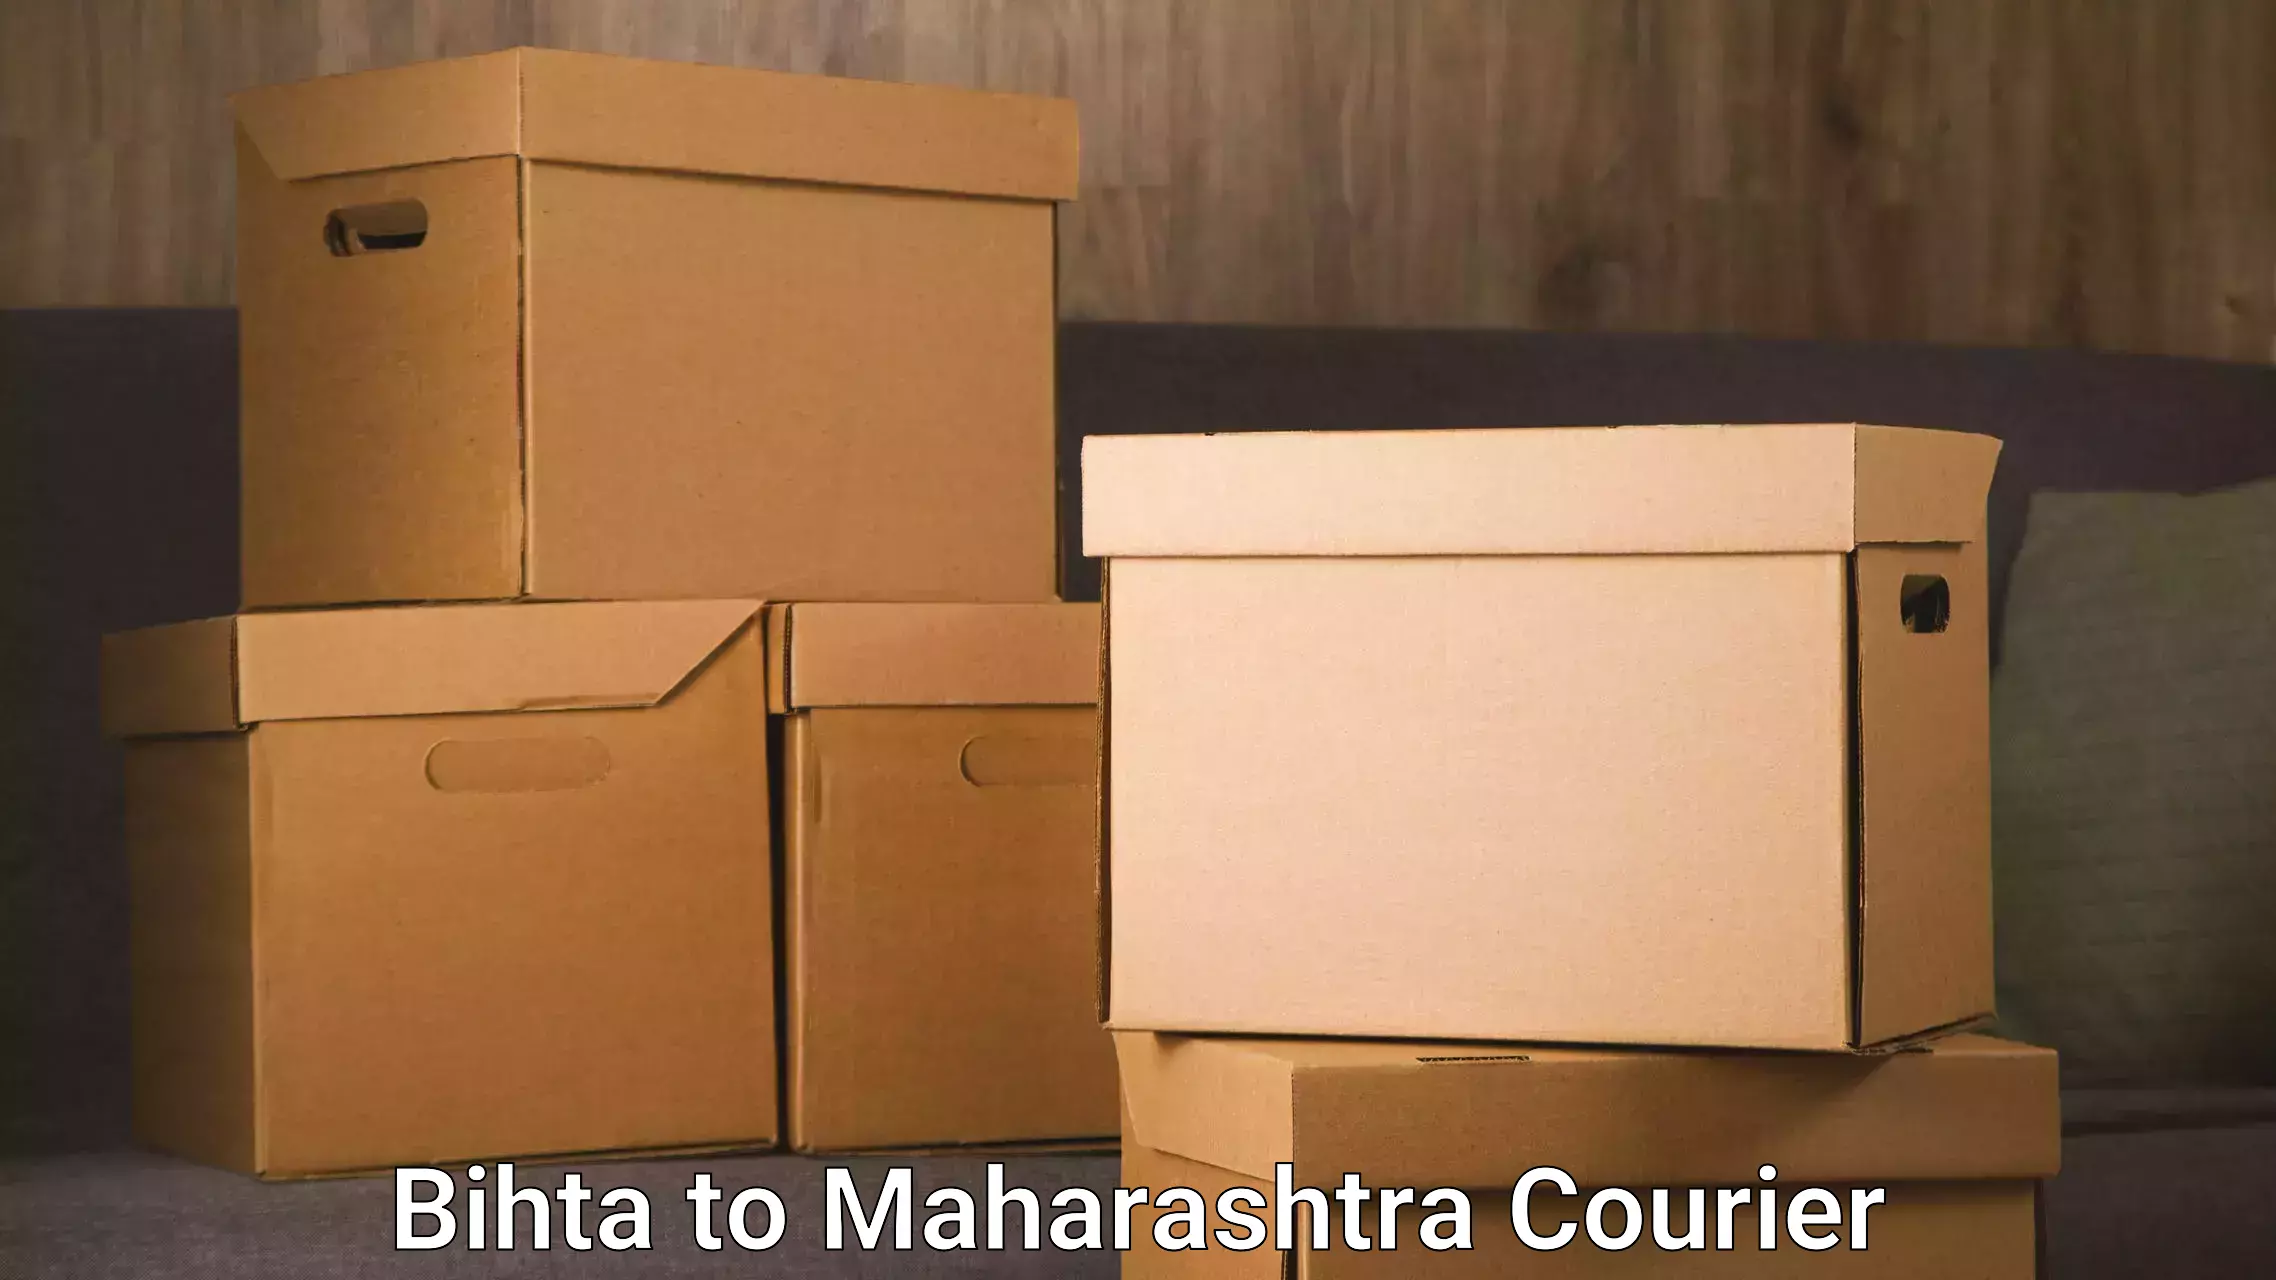 Specialized moving company Bihta to Maharashtra